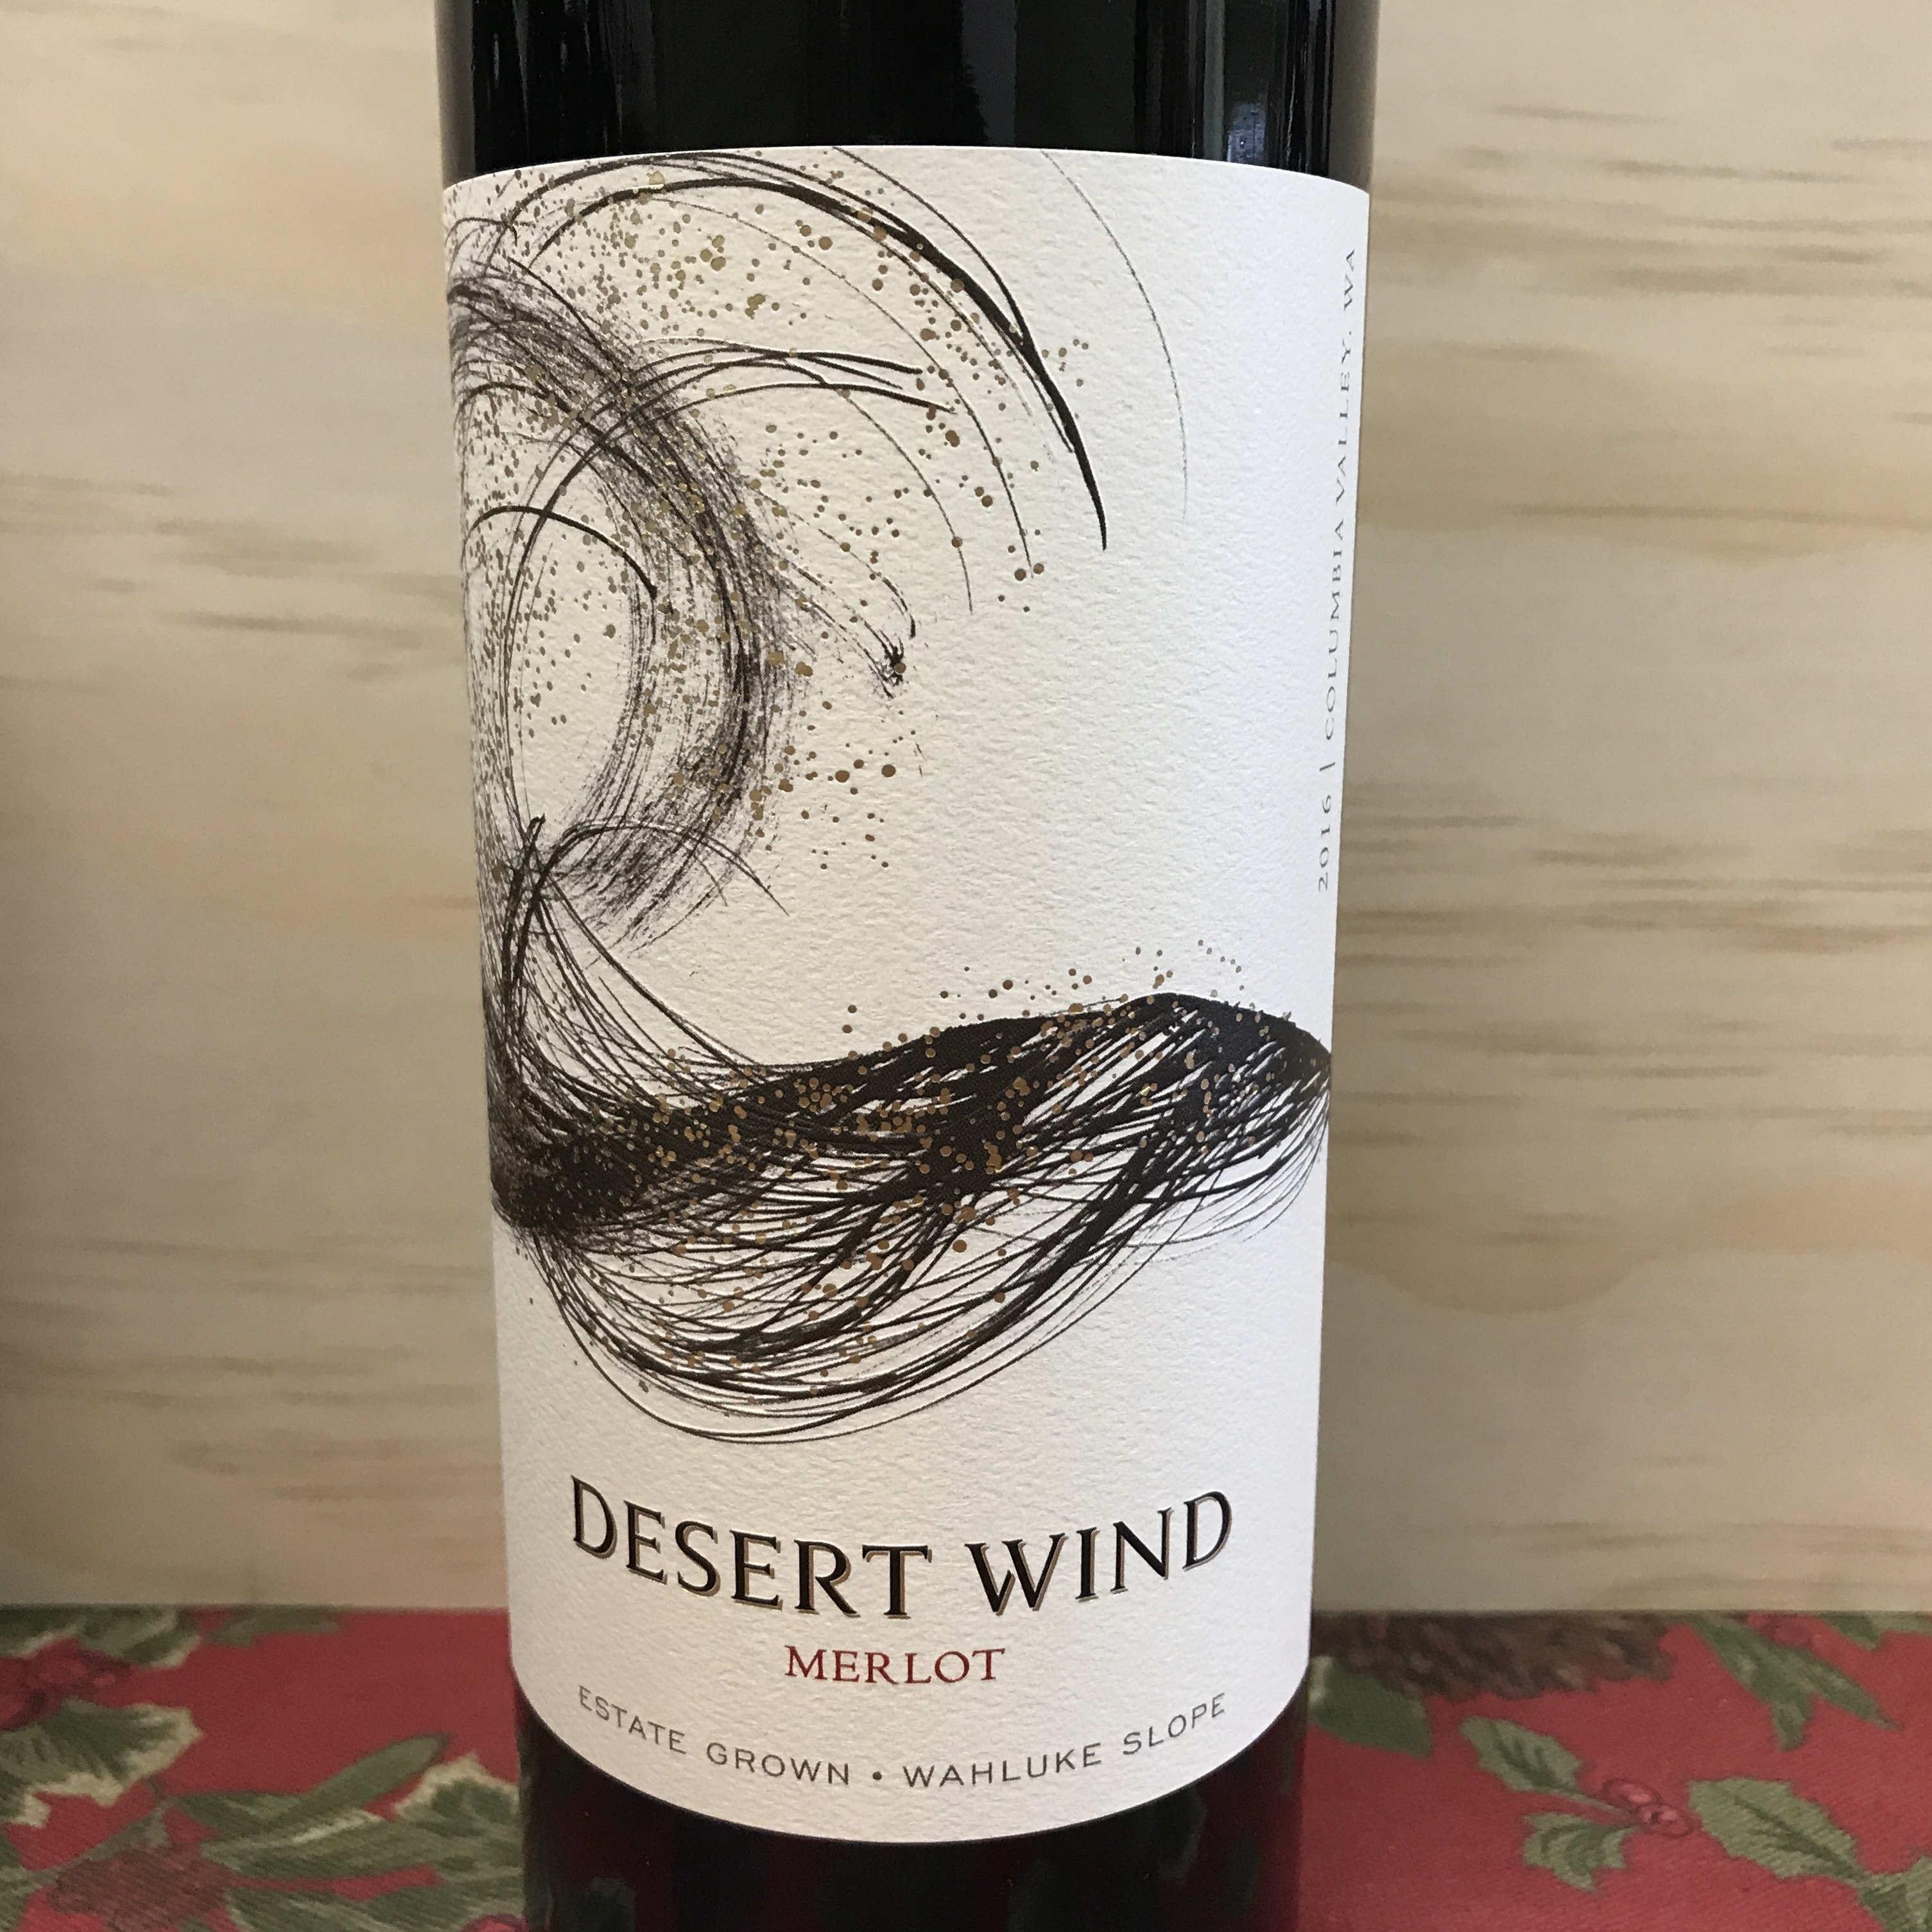 Desert Wind Merlot Wahluke Slope 2016